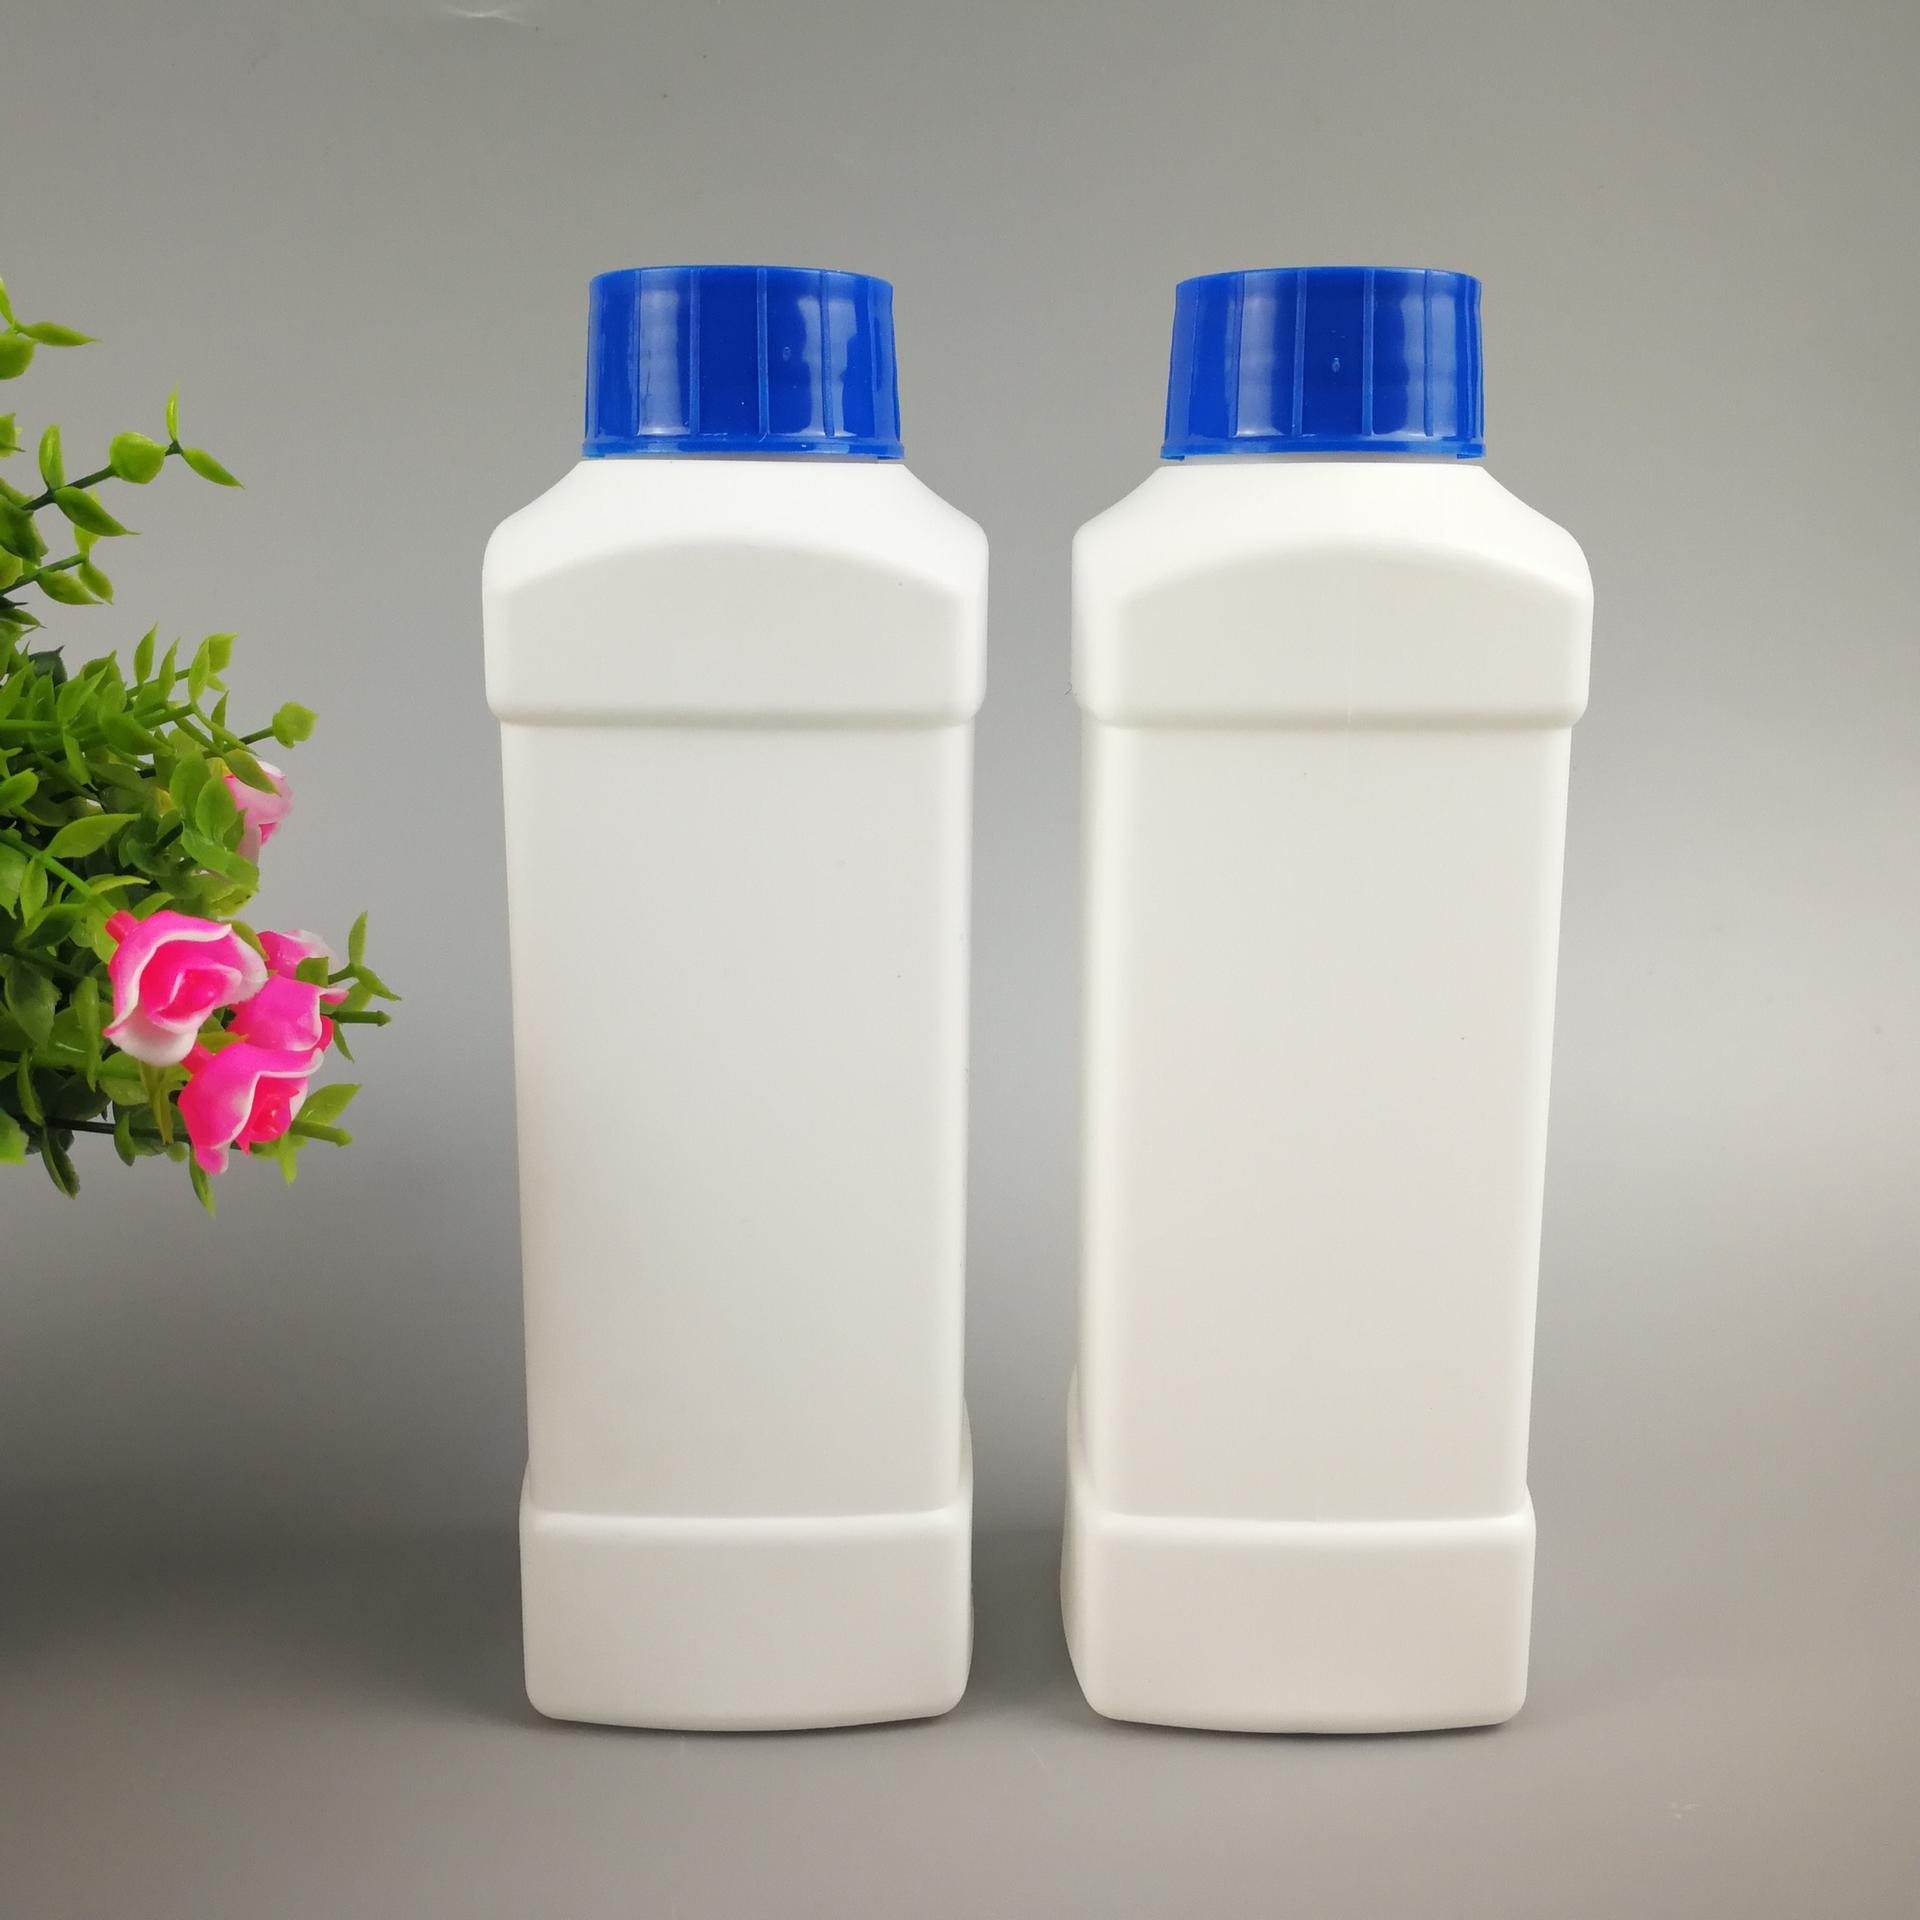 加工定制 1000ml 农药塑料瓶 1升方形洗衣液瓶子 化工分装瓶 包装塑料瓶子  外型设计 模具生产 欢迎采购